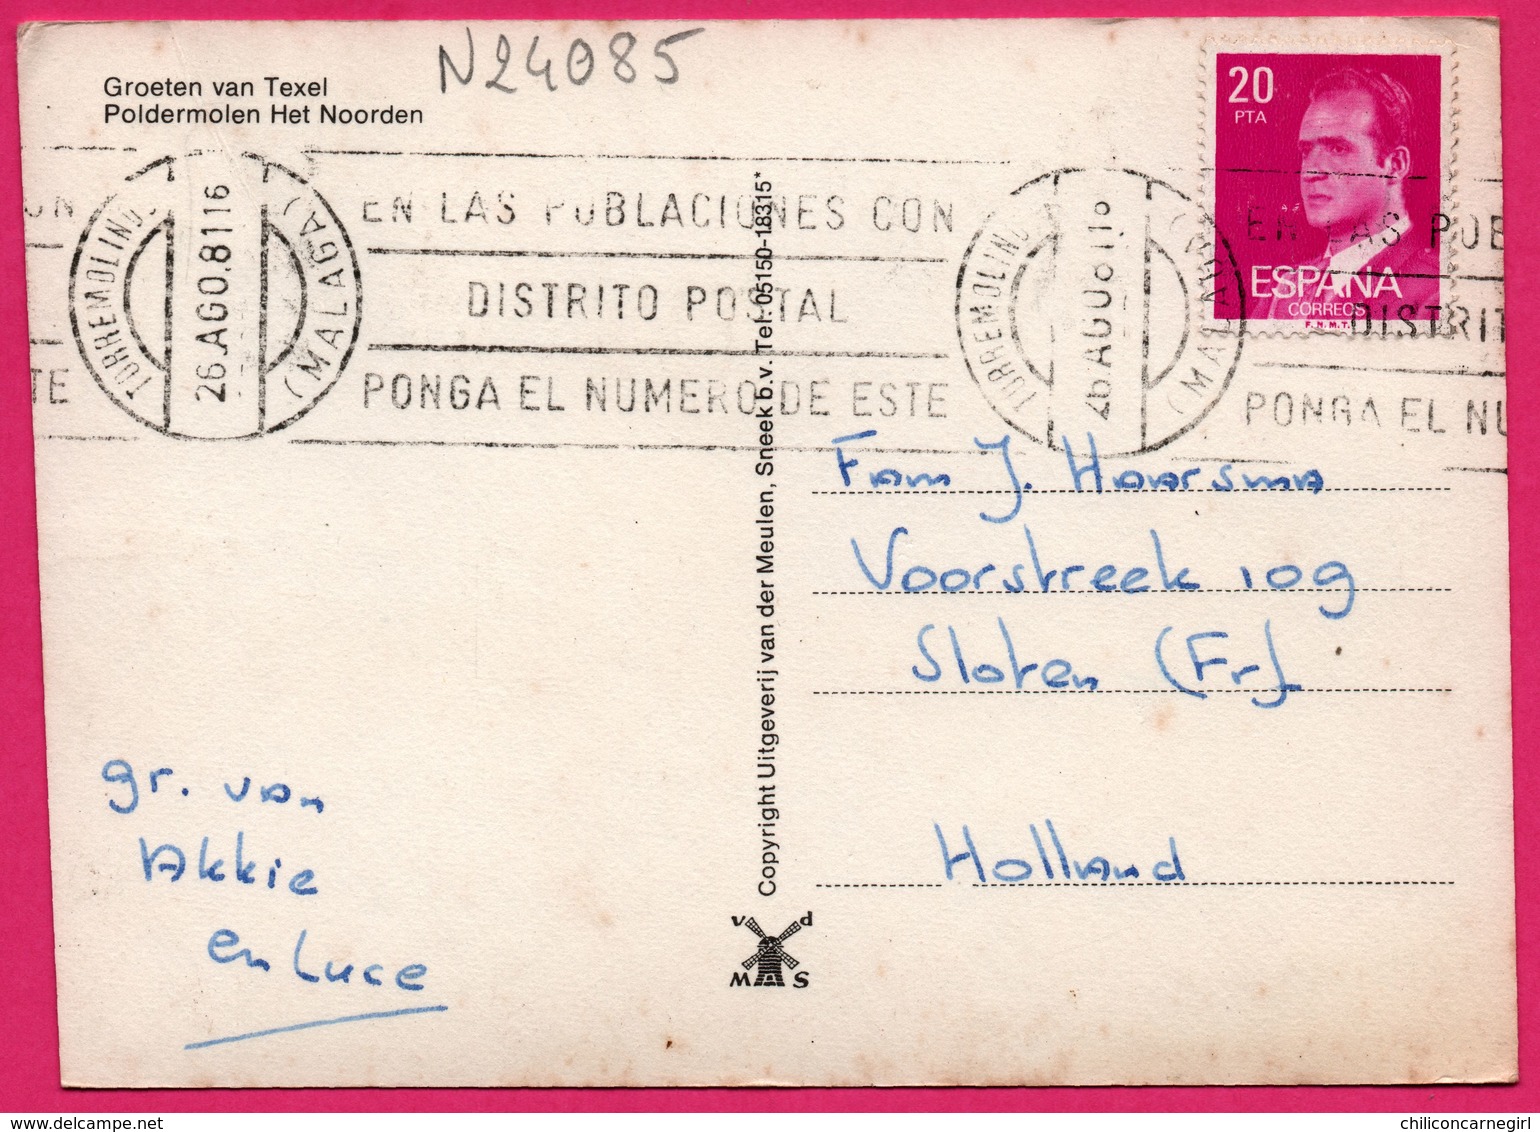 Nederland - Groeten Van Texel - Poldermolen Het Noorden -  Moulin - Molen - V. D. MAS - 1981 - Texel